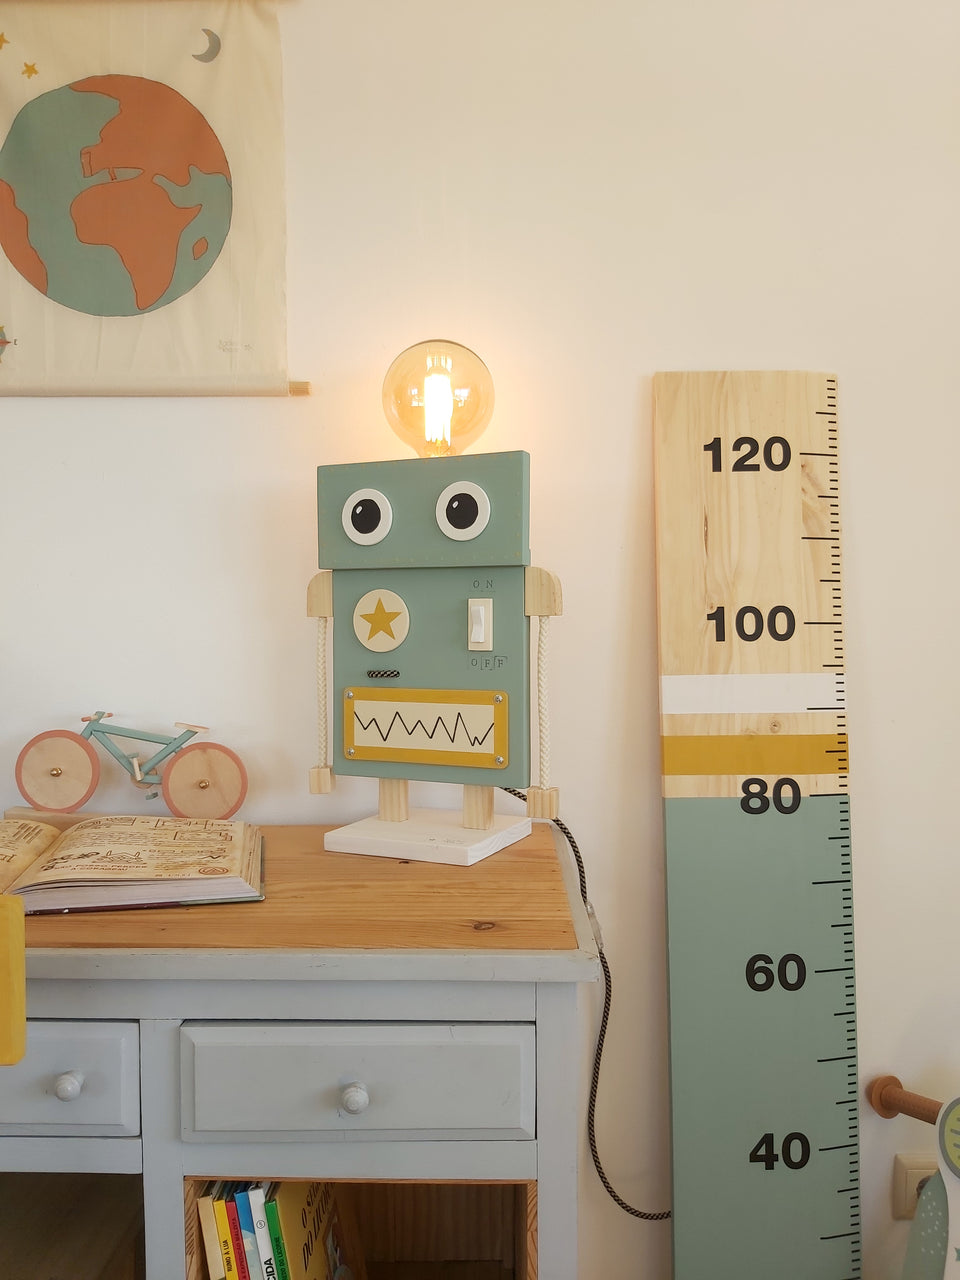 Candeeiro de mesa Robot Trend - Robot Trend table lamp